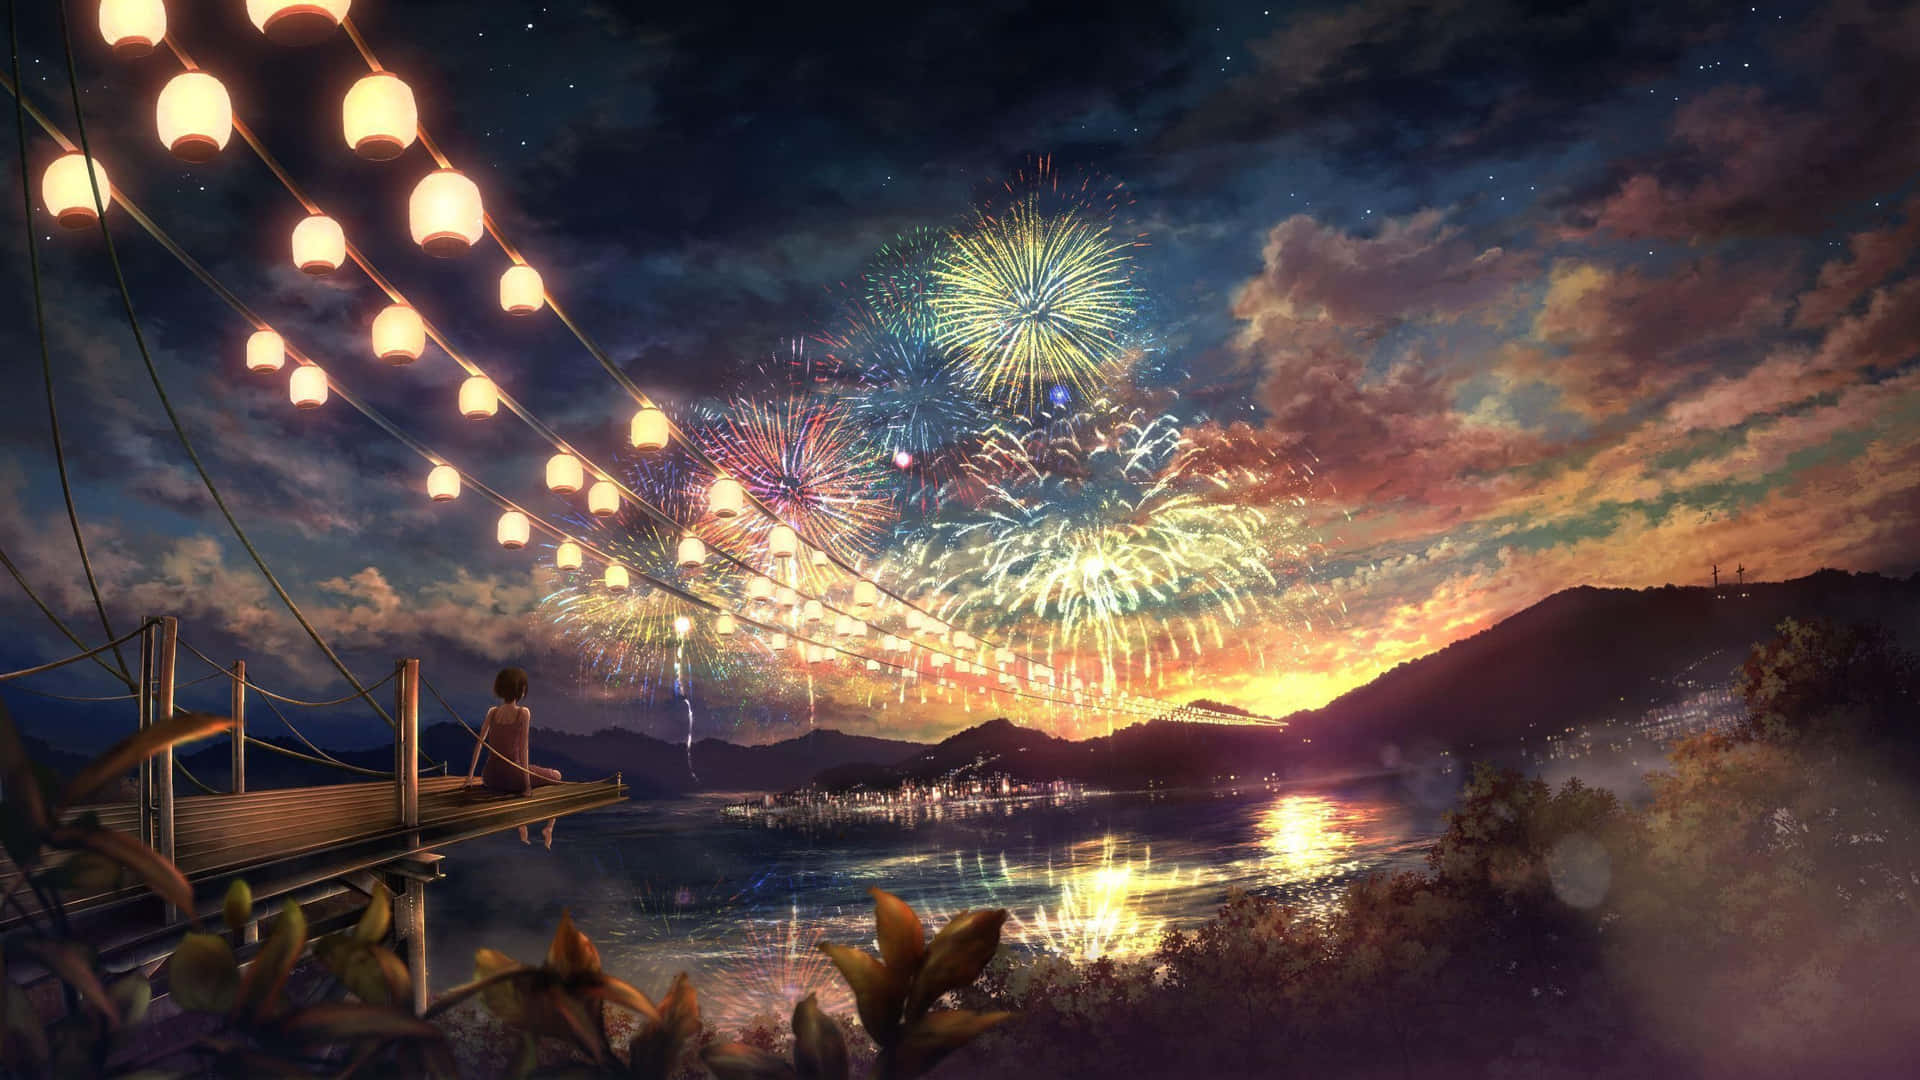 Einesurreale Landschaft Aus Einem Wunderschönen Anime Wallpaper